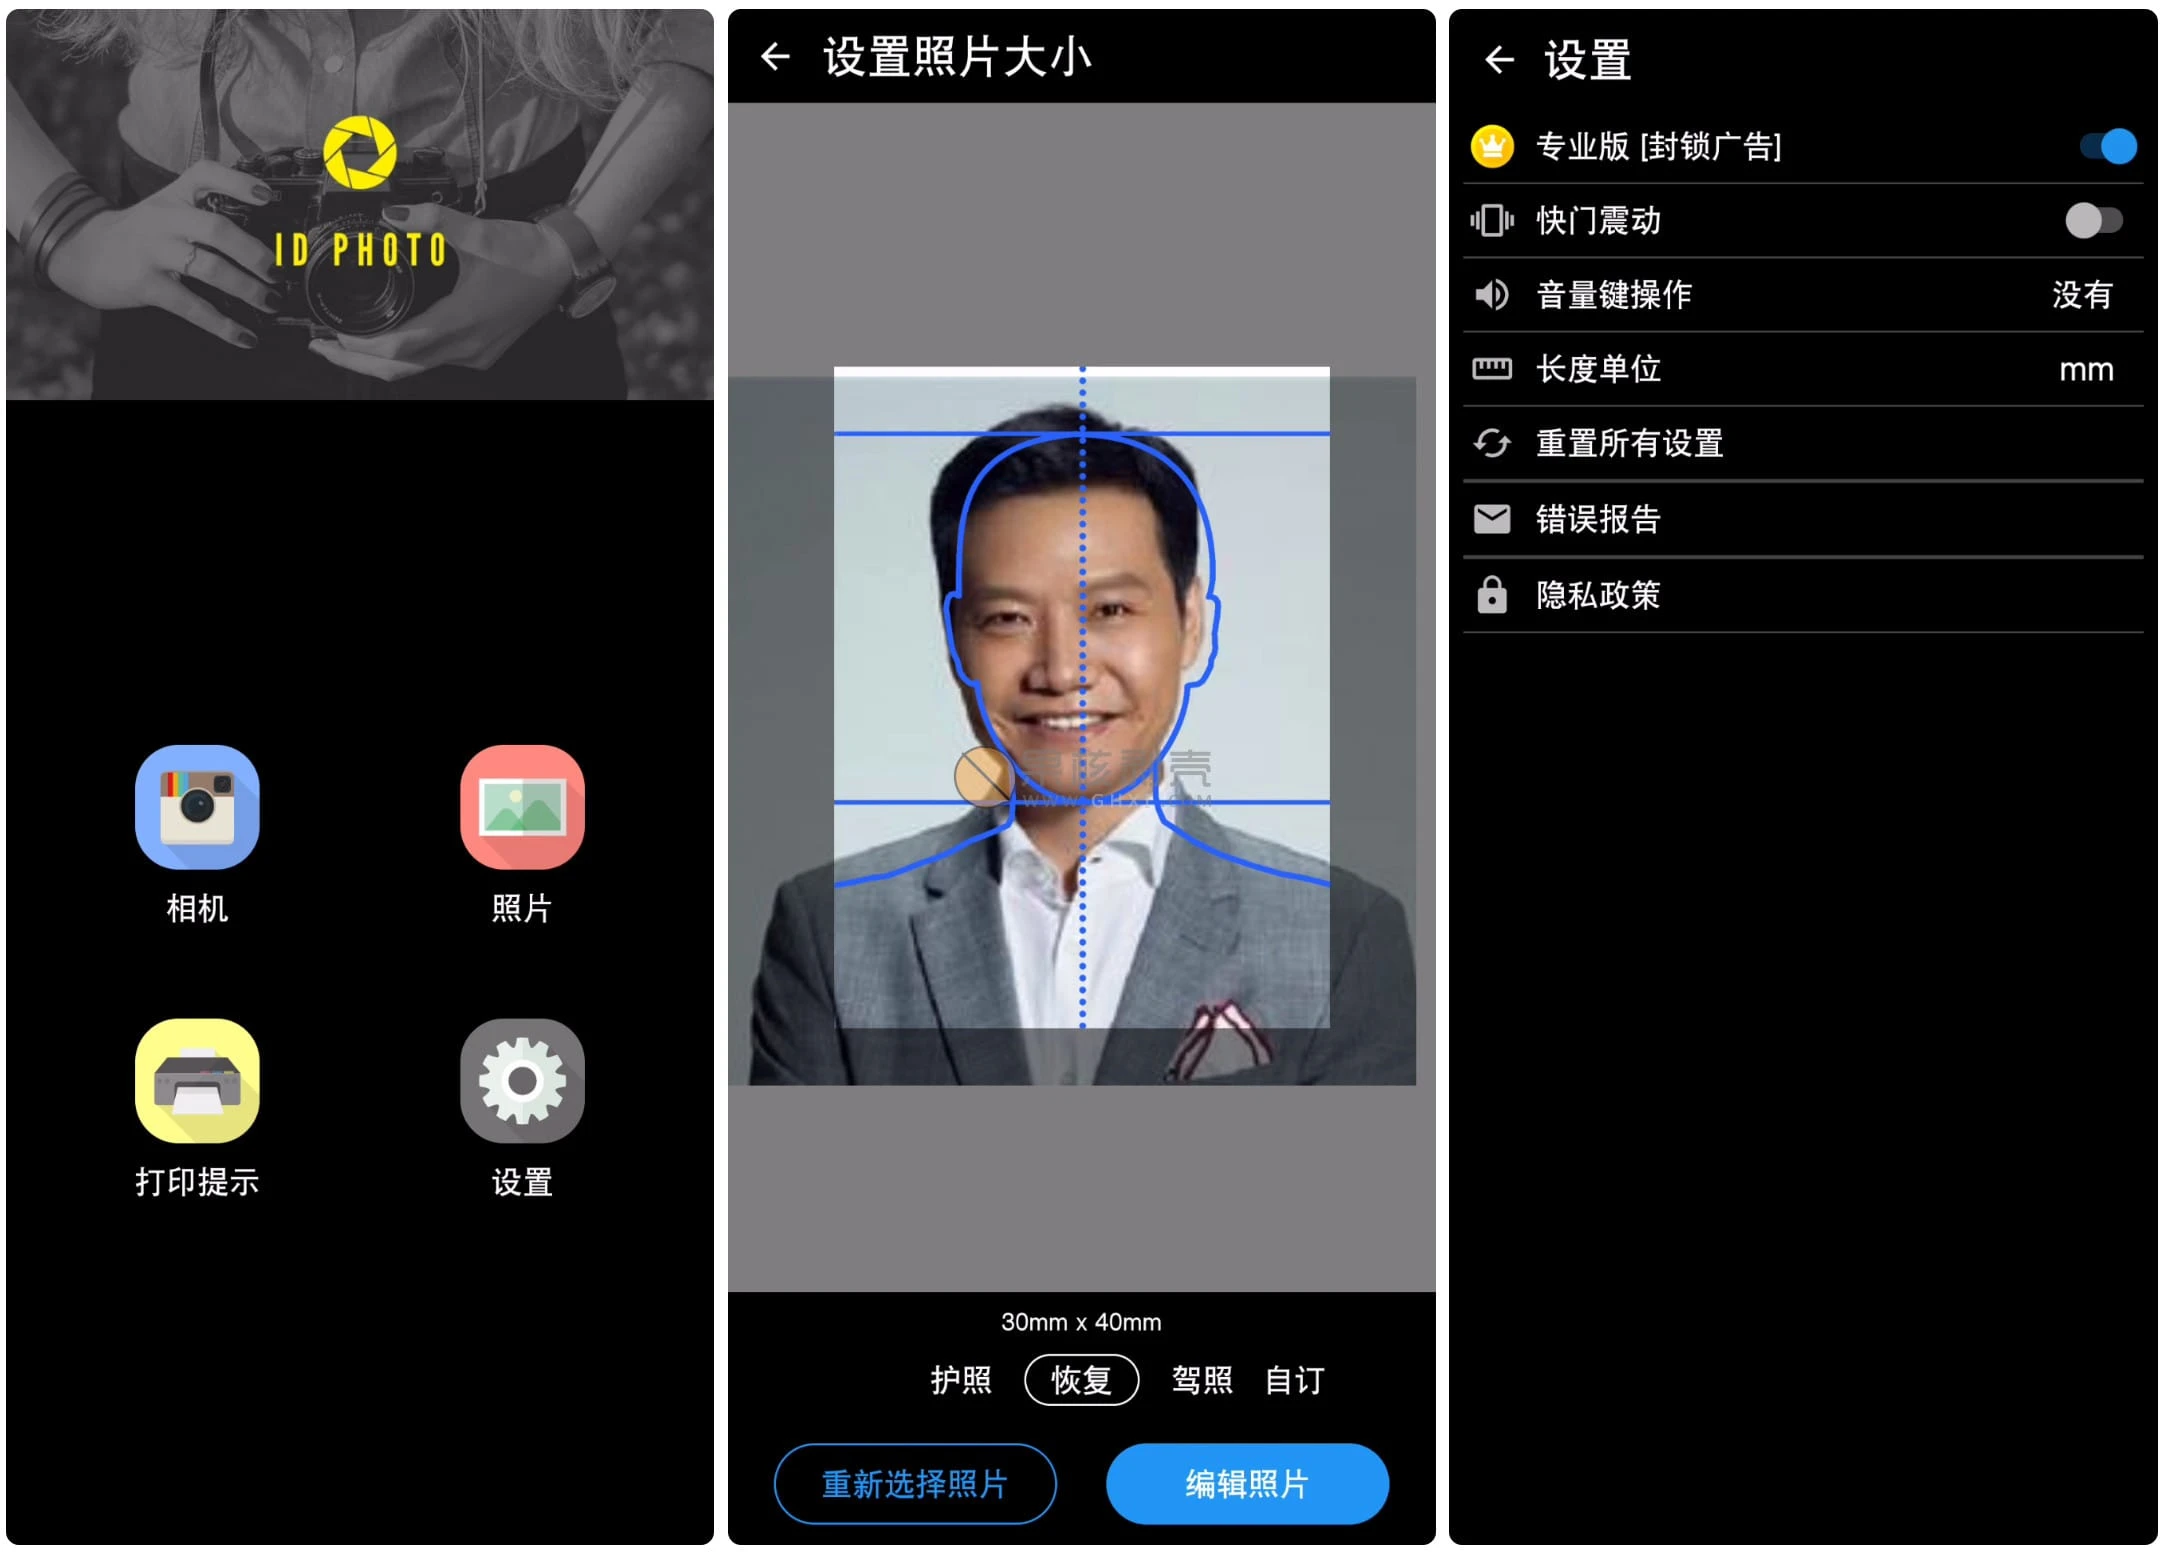 Android ID Photo(证件照片) v8.3.14 高级版